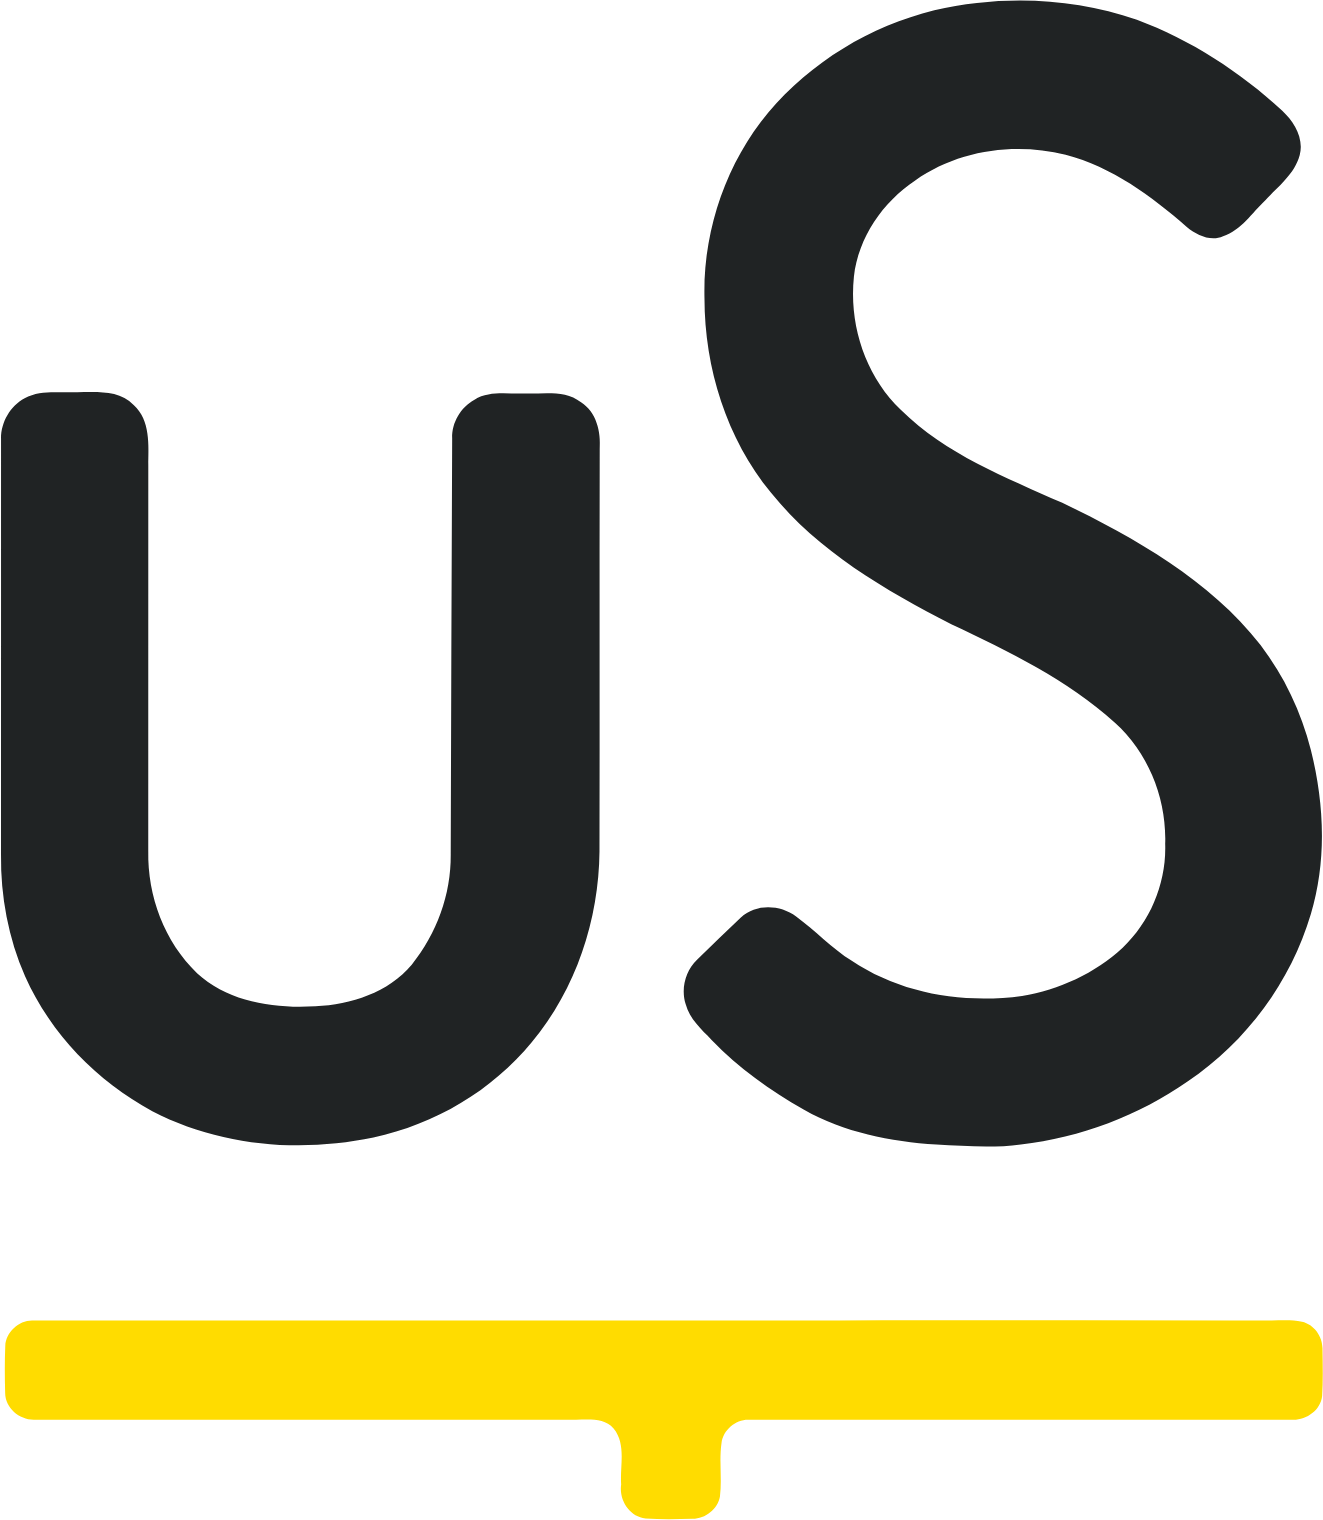 Unite Group (Unite Students) logo (transparent PNG)